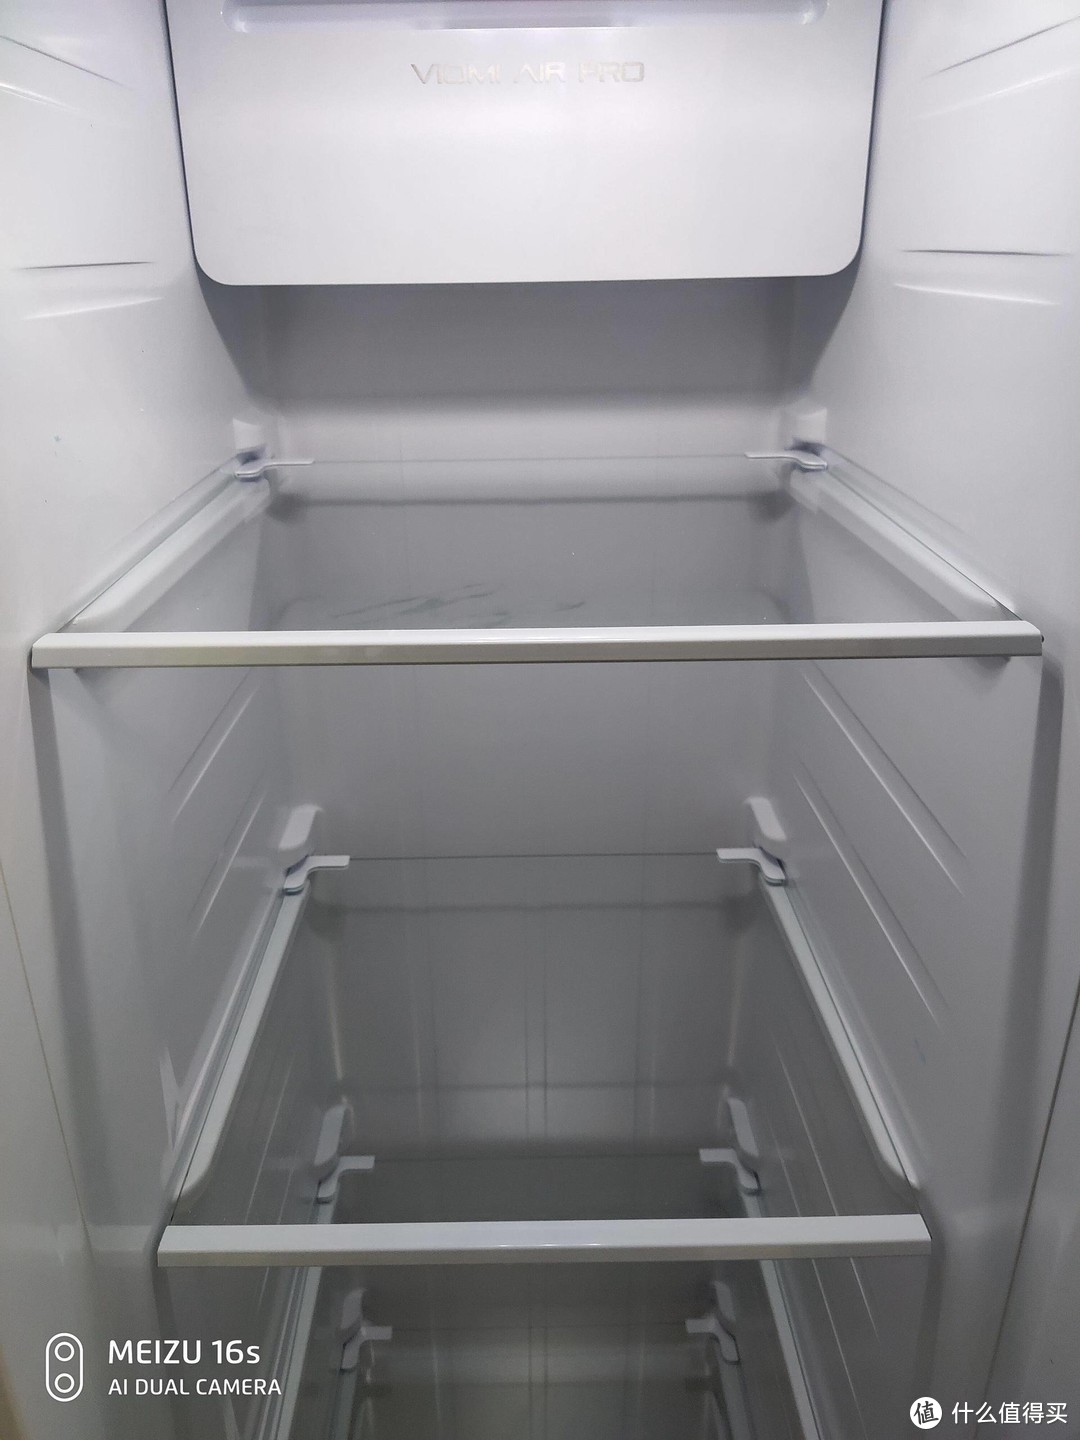 把家庭影院搬到冰箱上？云米互动大屏冰箱使用评测